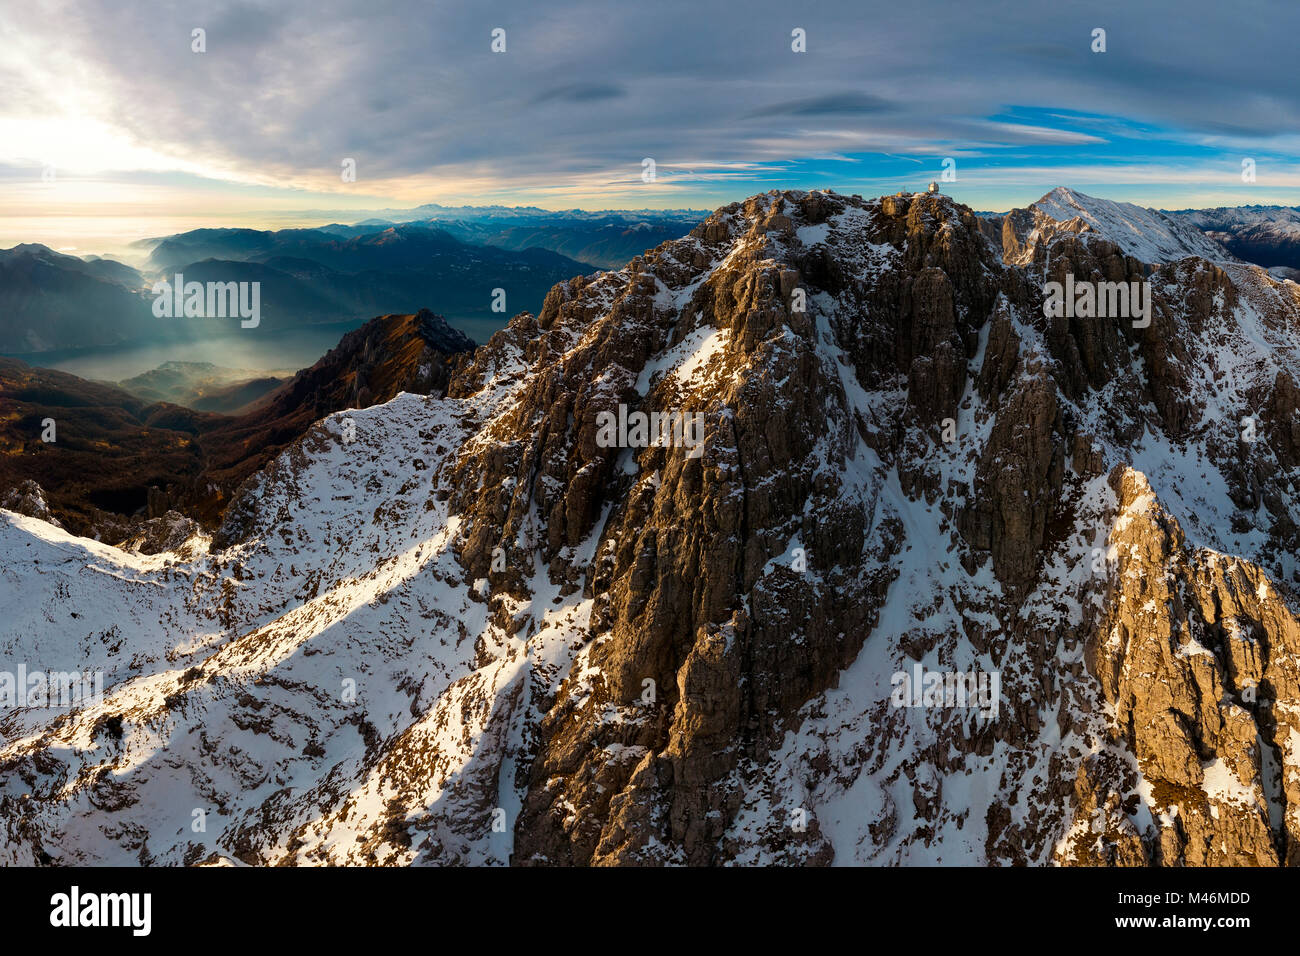 Vue panoramique sur le sommet du mont Grigna Meridionale au coucher du soleil en hiver, grigna meridionale, province de Lecco, Lombardie, Italie, Europe Banque D'Images